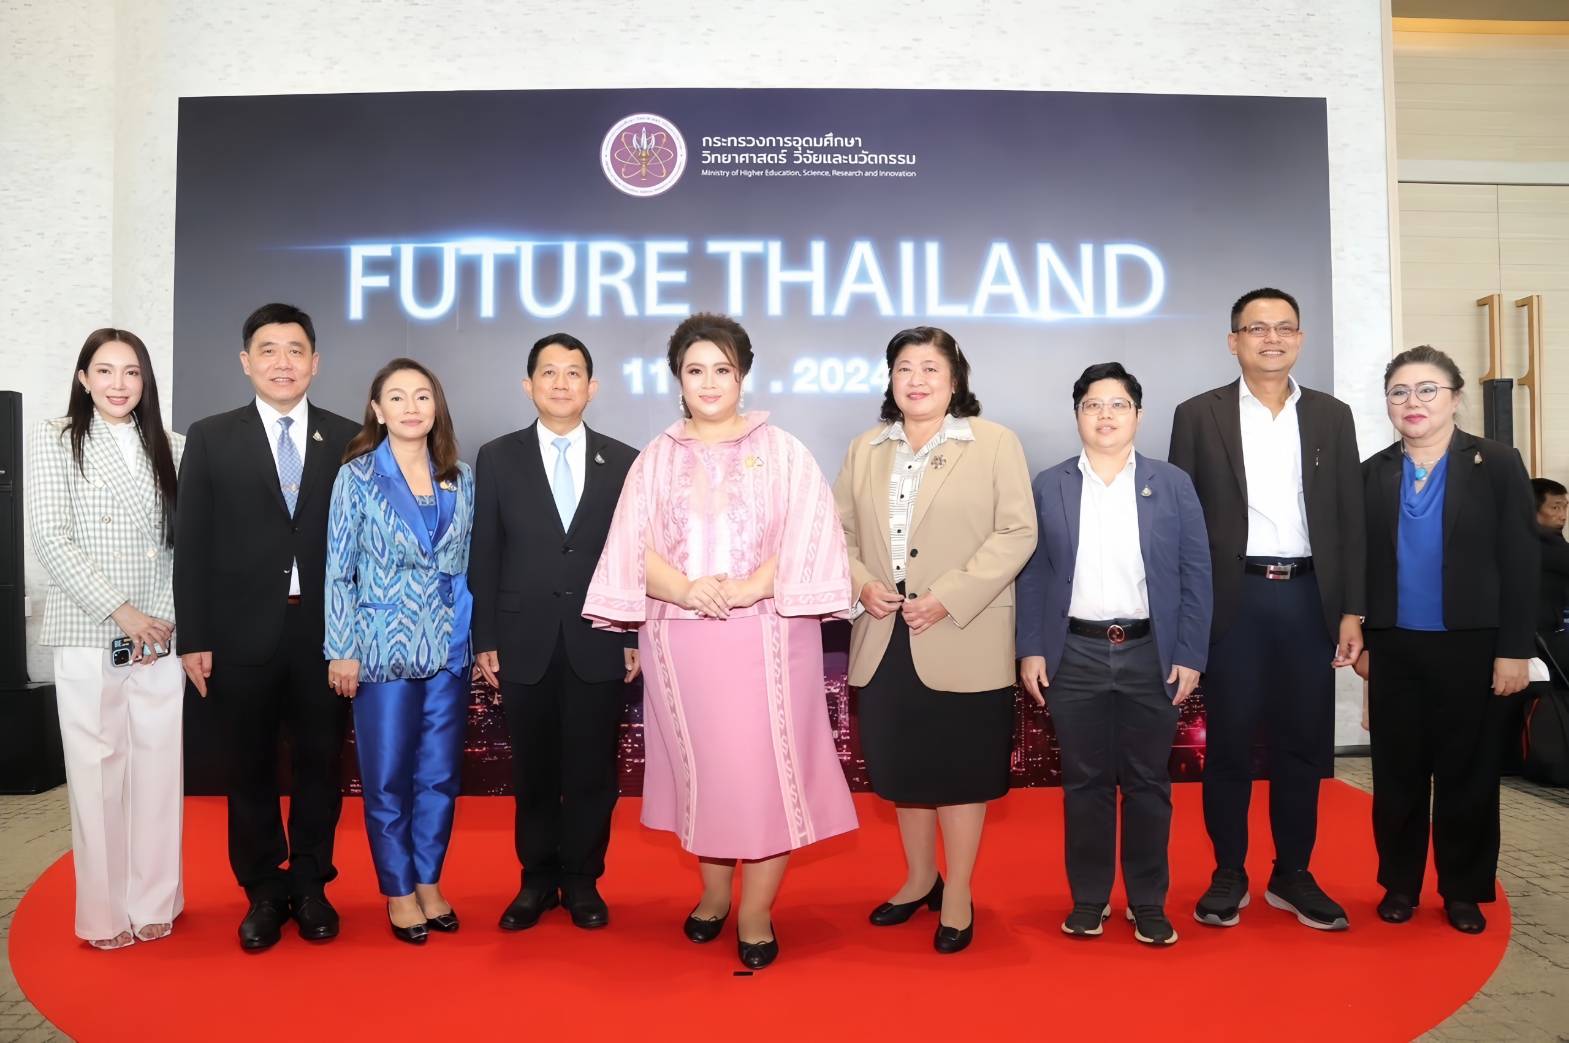 the Future Thailand Event